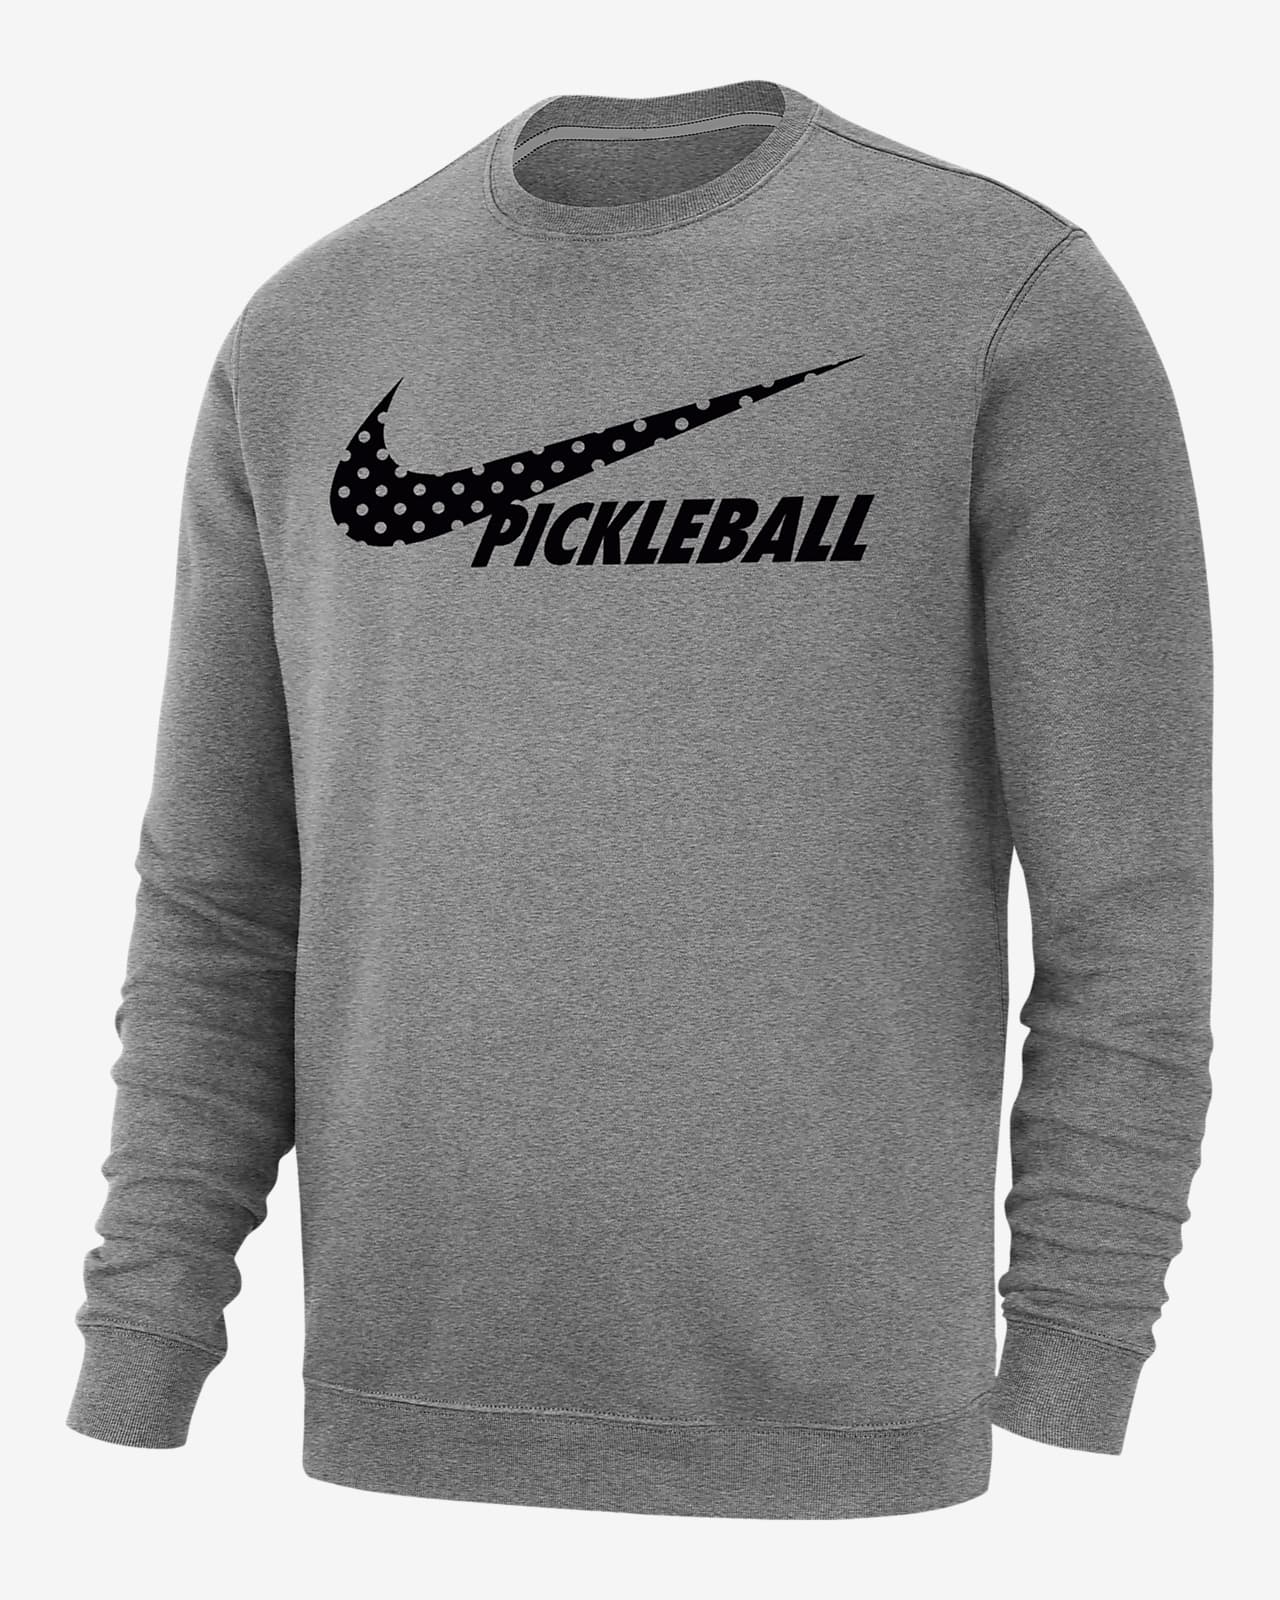 Nike Sportswear Club Fleece Men's Pickleball Sweatshirt